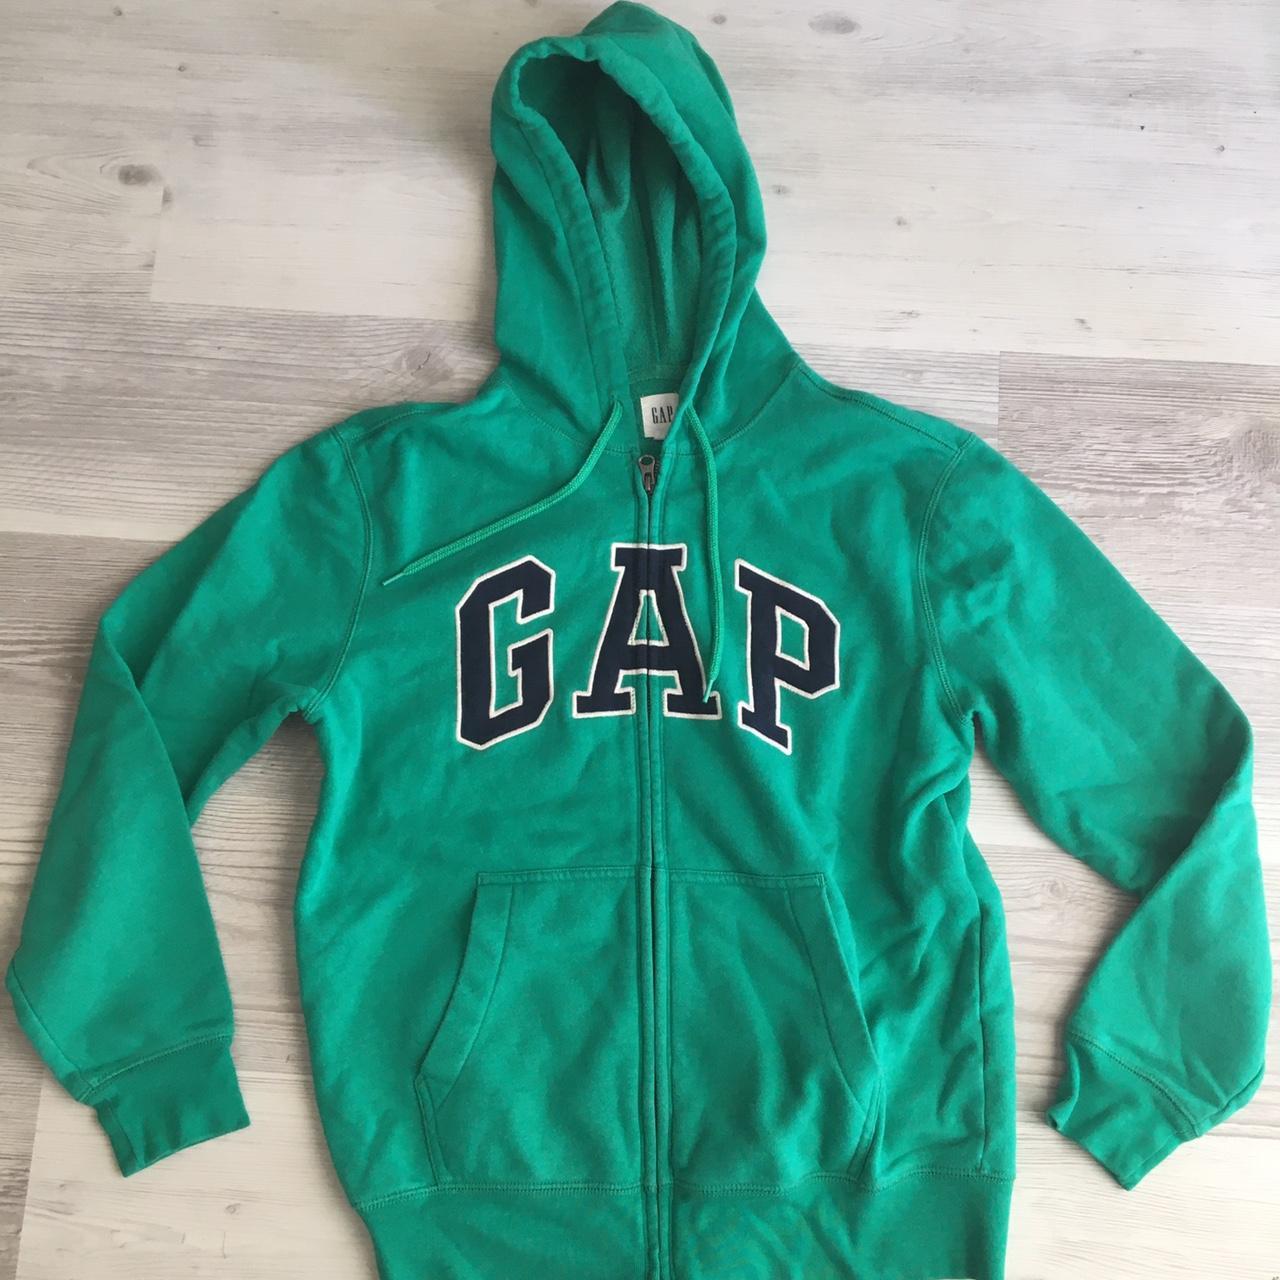 Green Gap zip hoodie - Depop